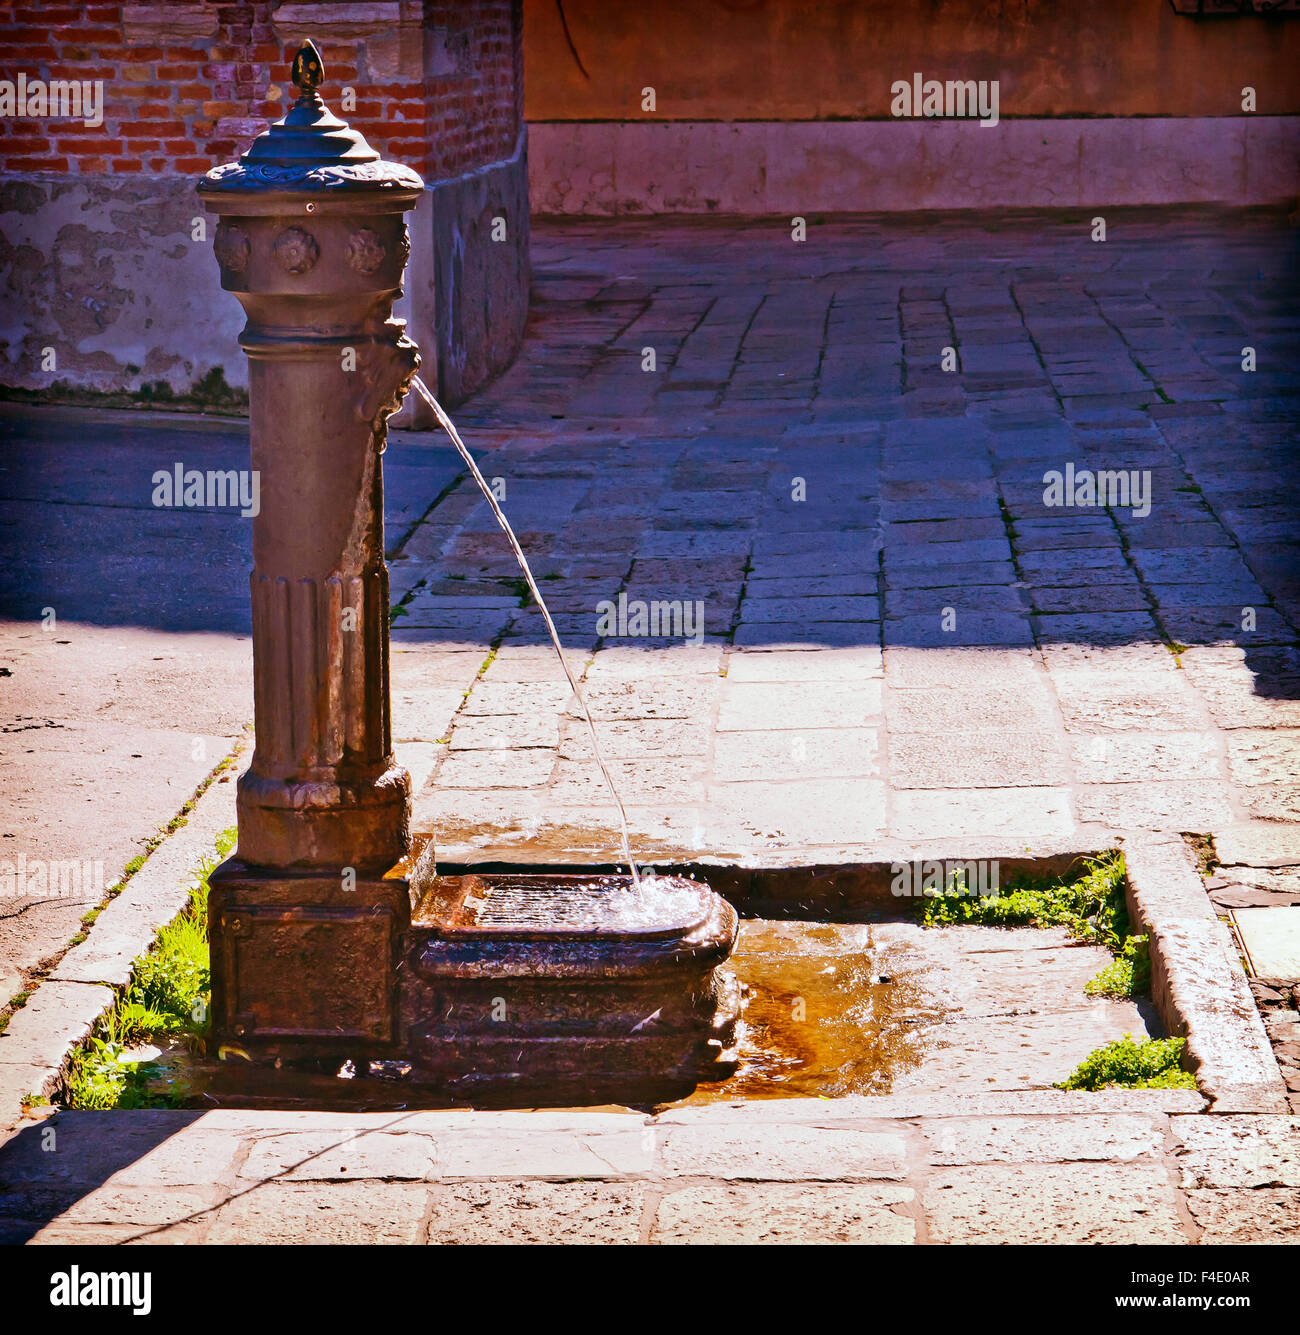 Venedig, Italien - Eisen alte öffentliche Brunnen bietet Erfrischung für Touristen an sonnigen Sommertagen Stockfoto